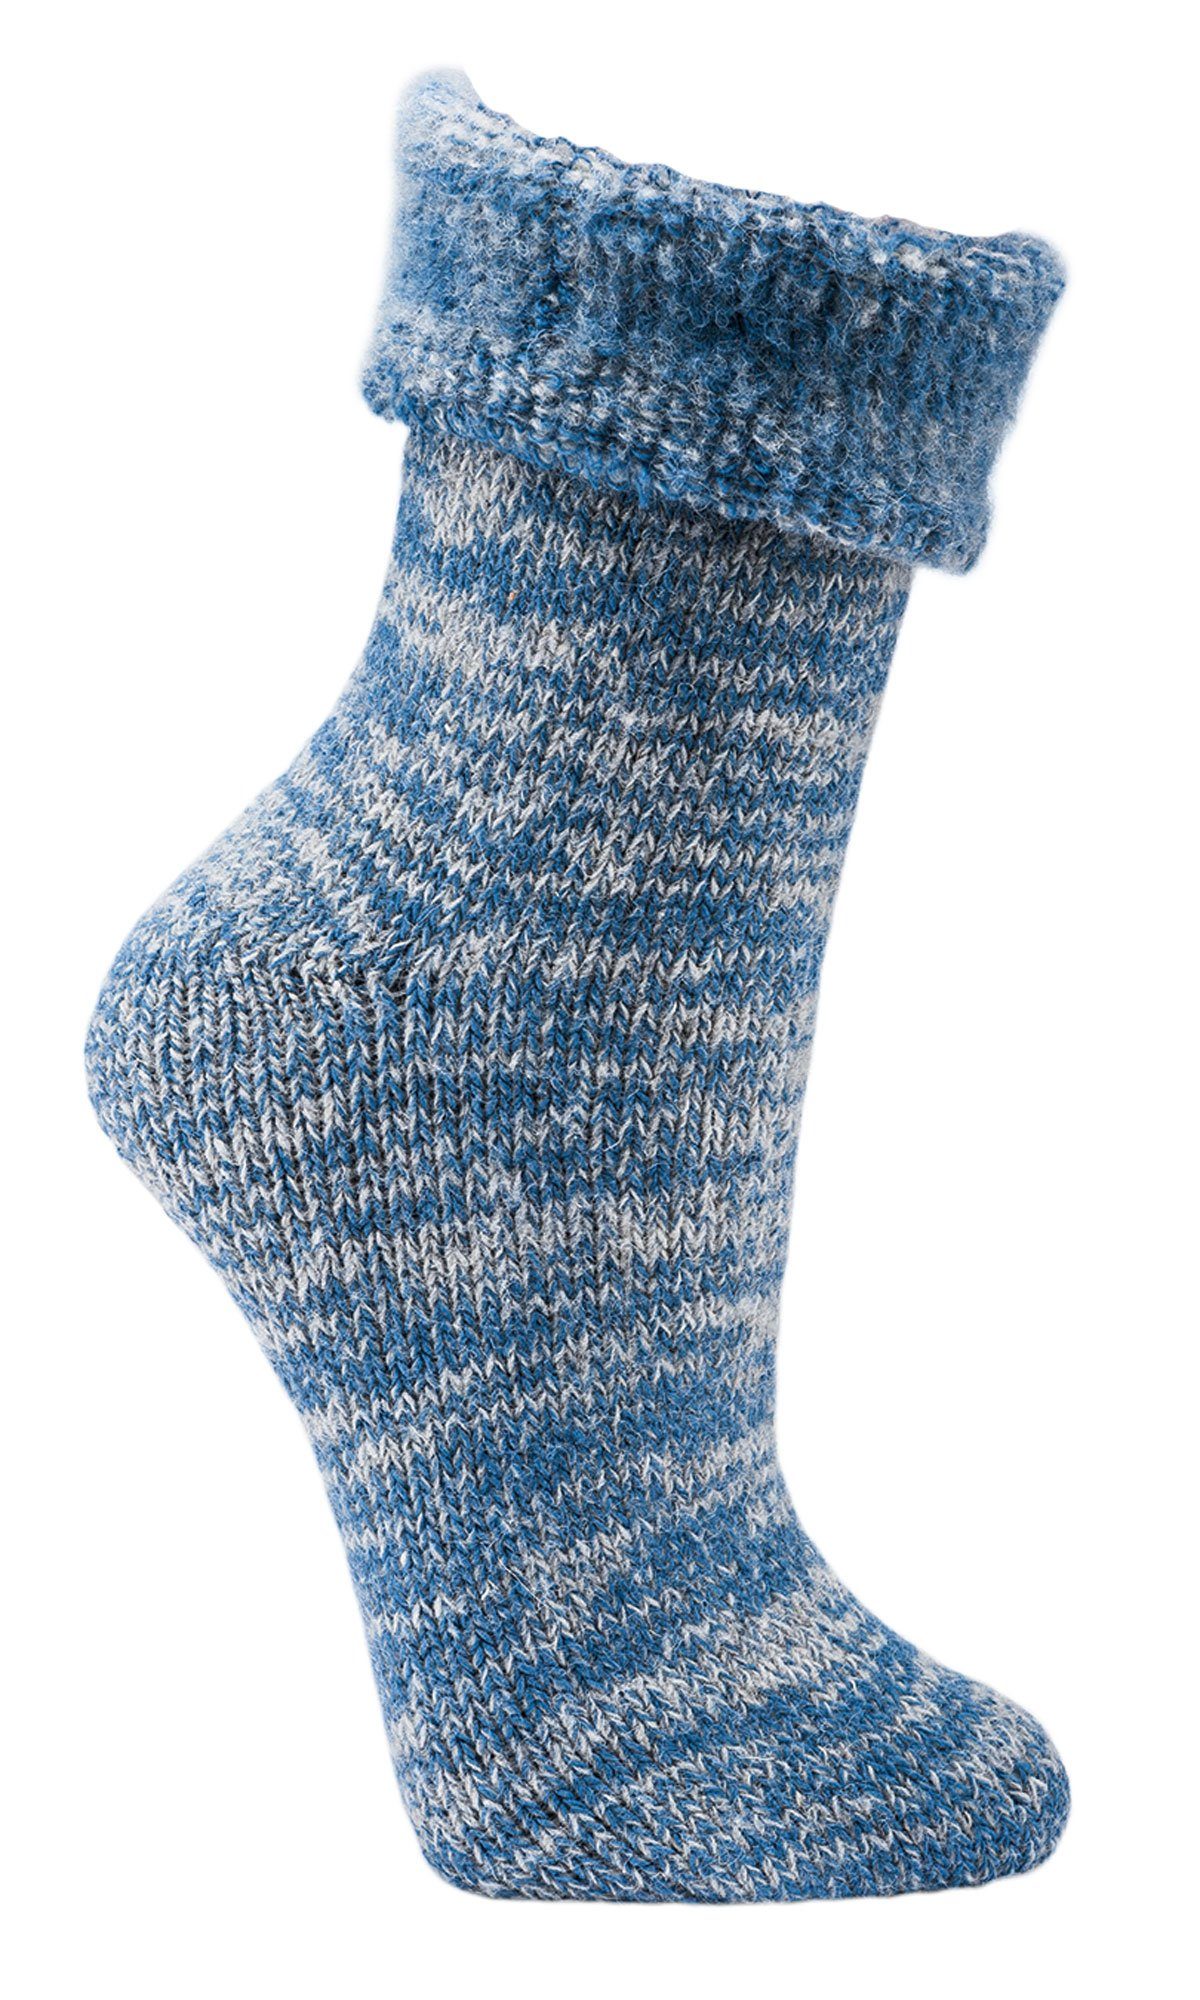 Wowerat Socken MEGA (1 Paar) Thermosocken extra dick Homesocks jeansmelange 63% Socken warme Wolle